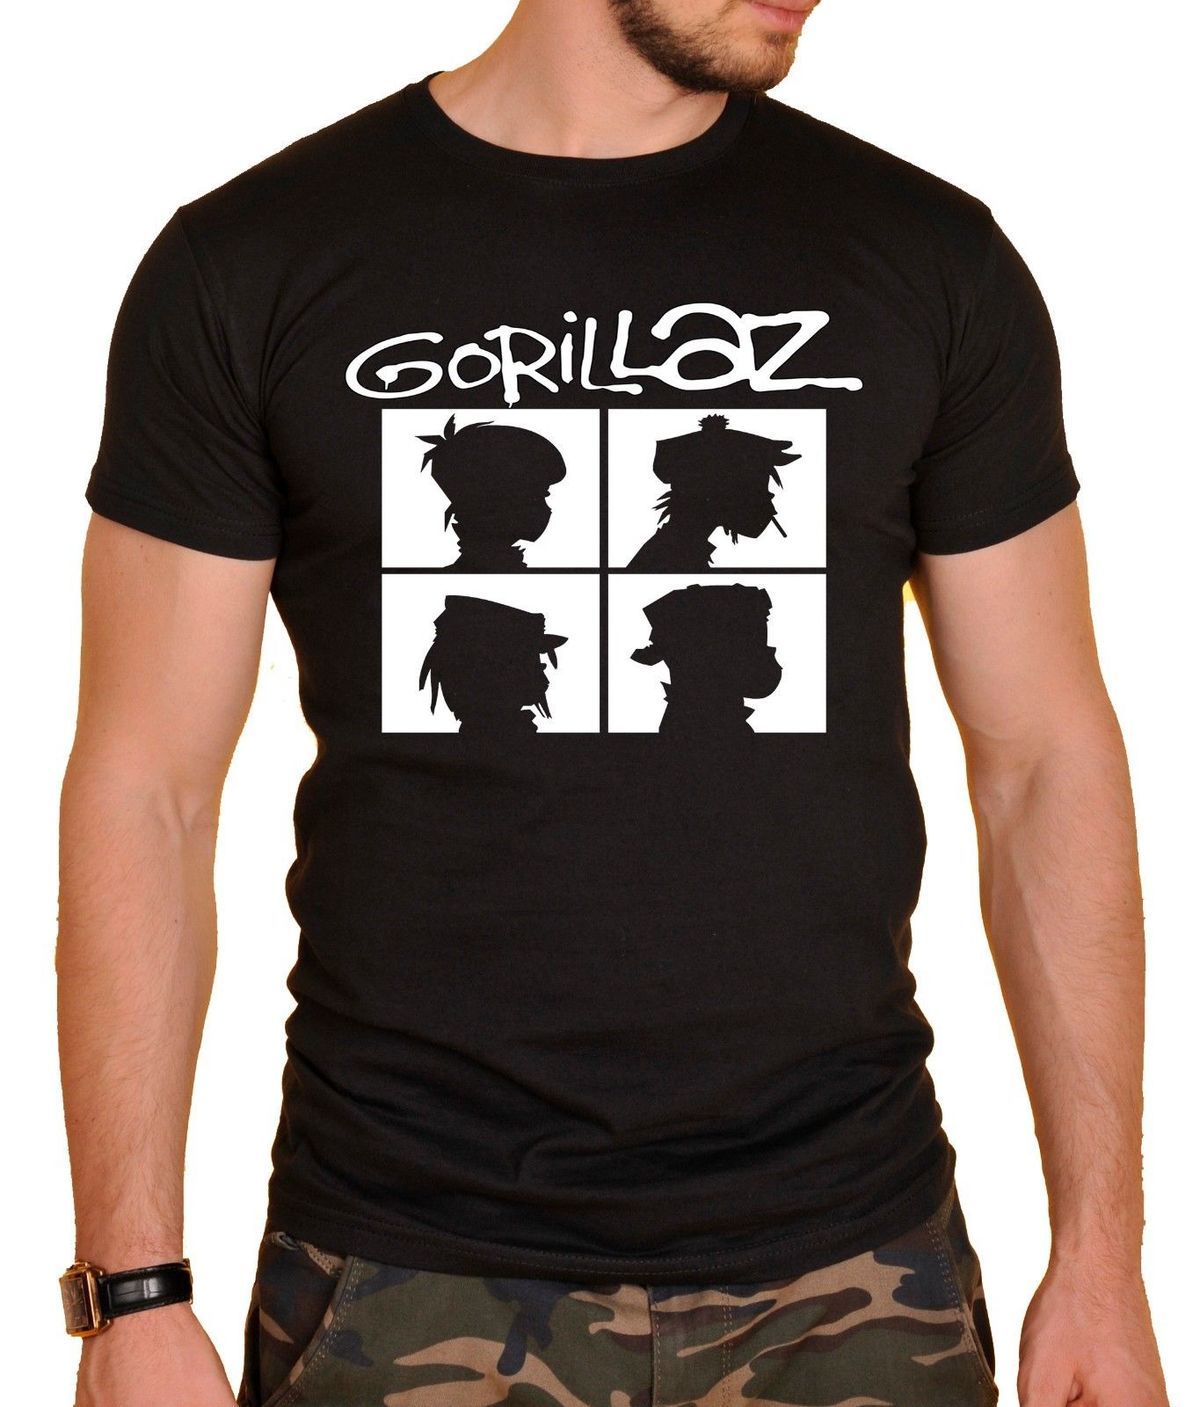 Camiseta Premium Dtg Rock Estampada Gorillaz 03 